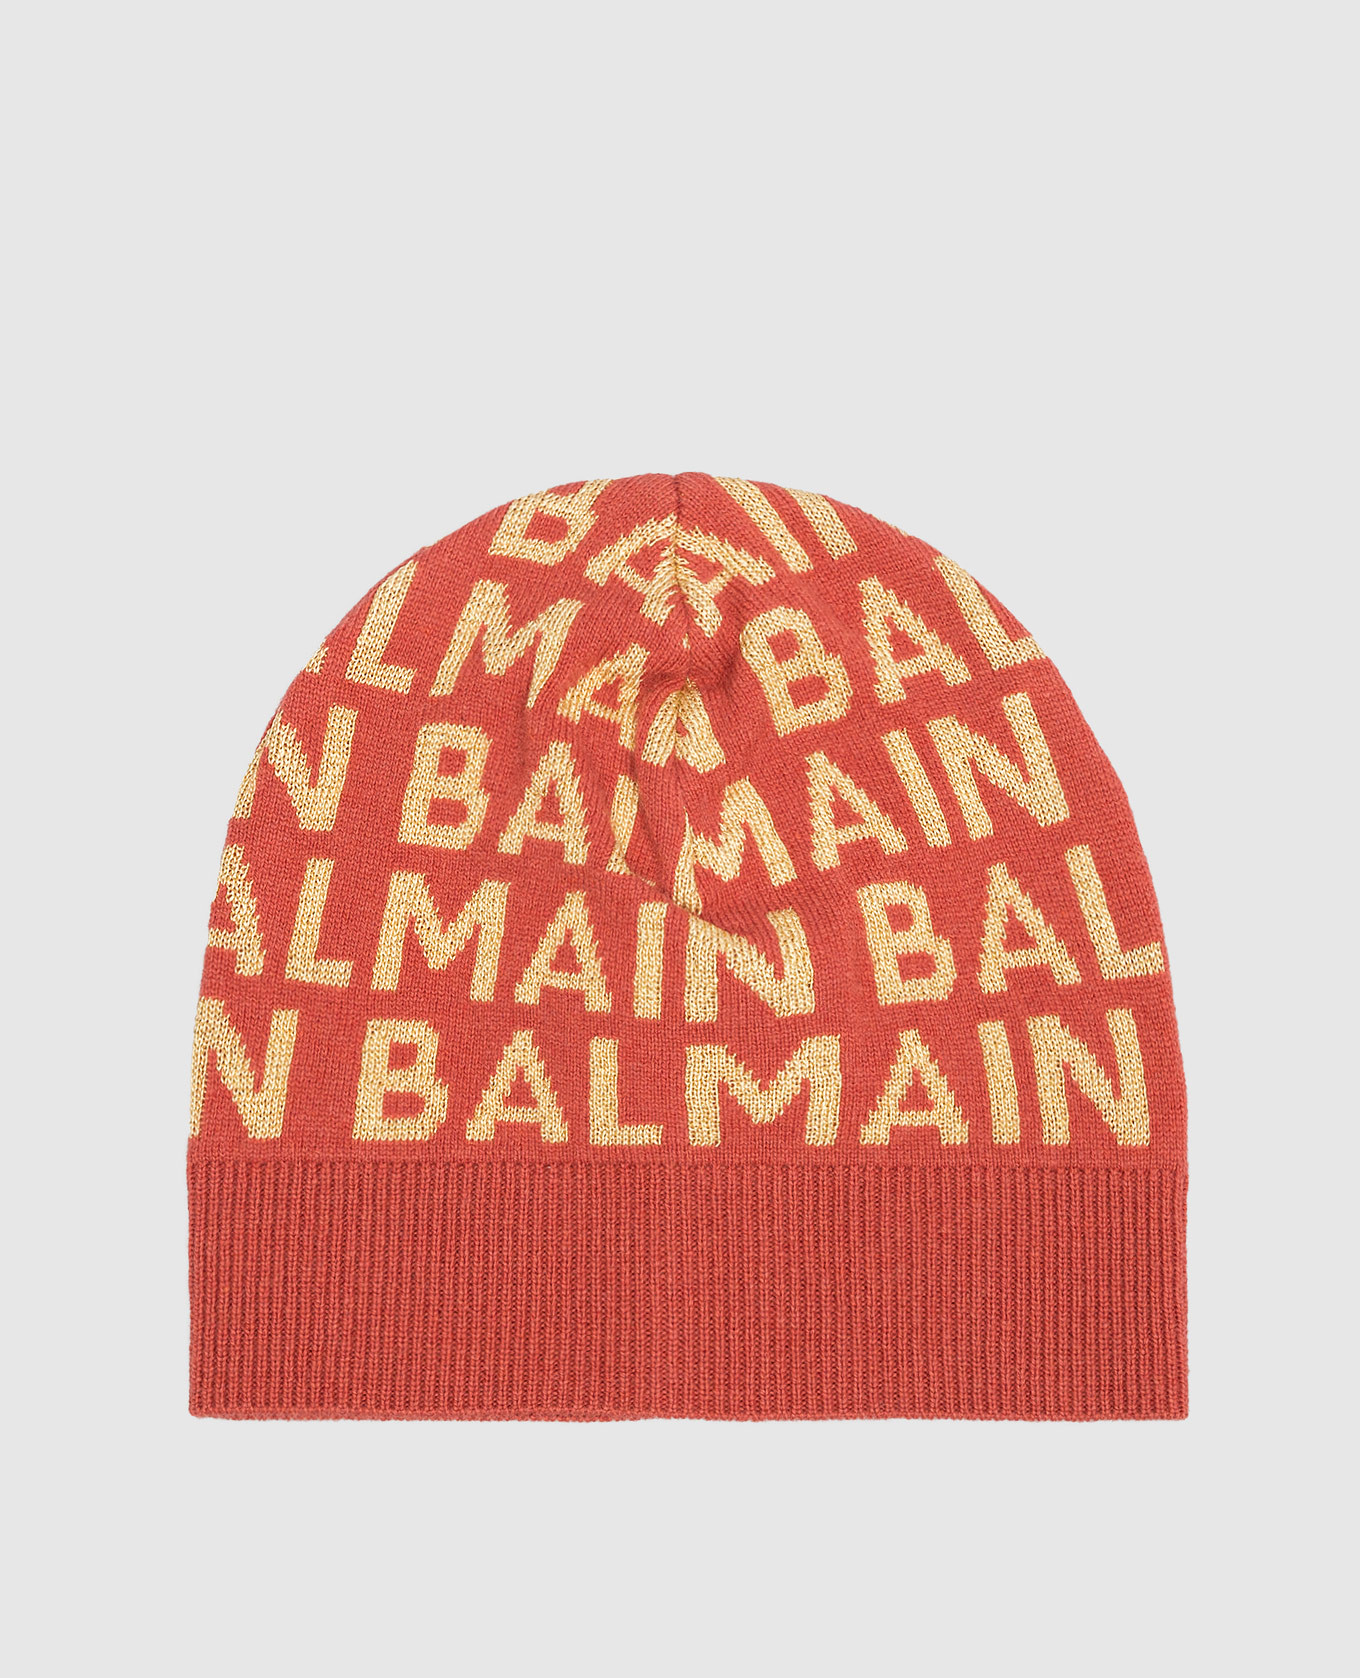 Children's red logo hat with lurex